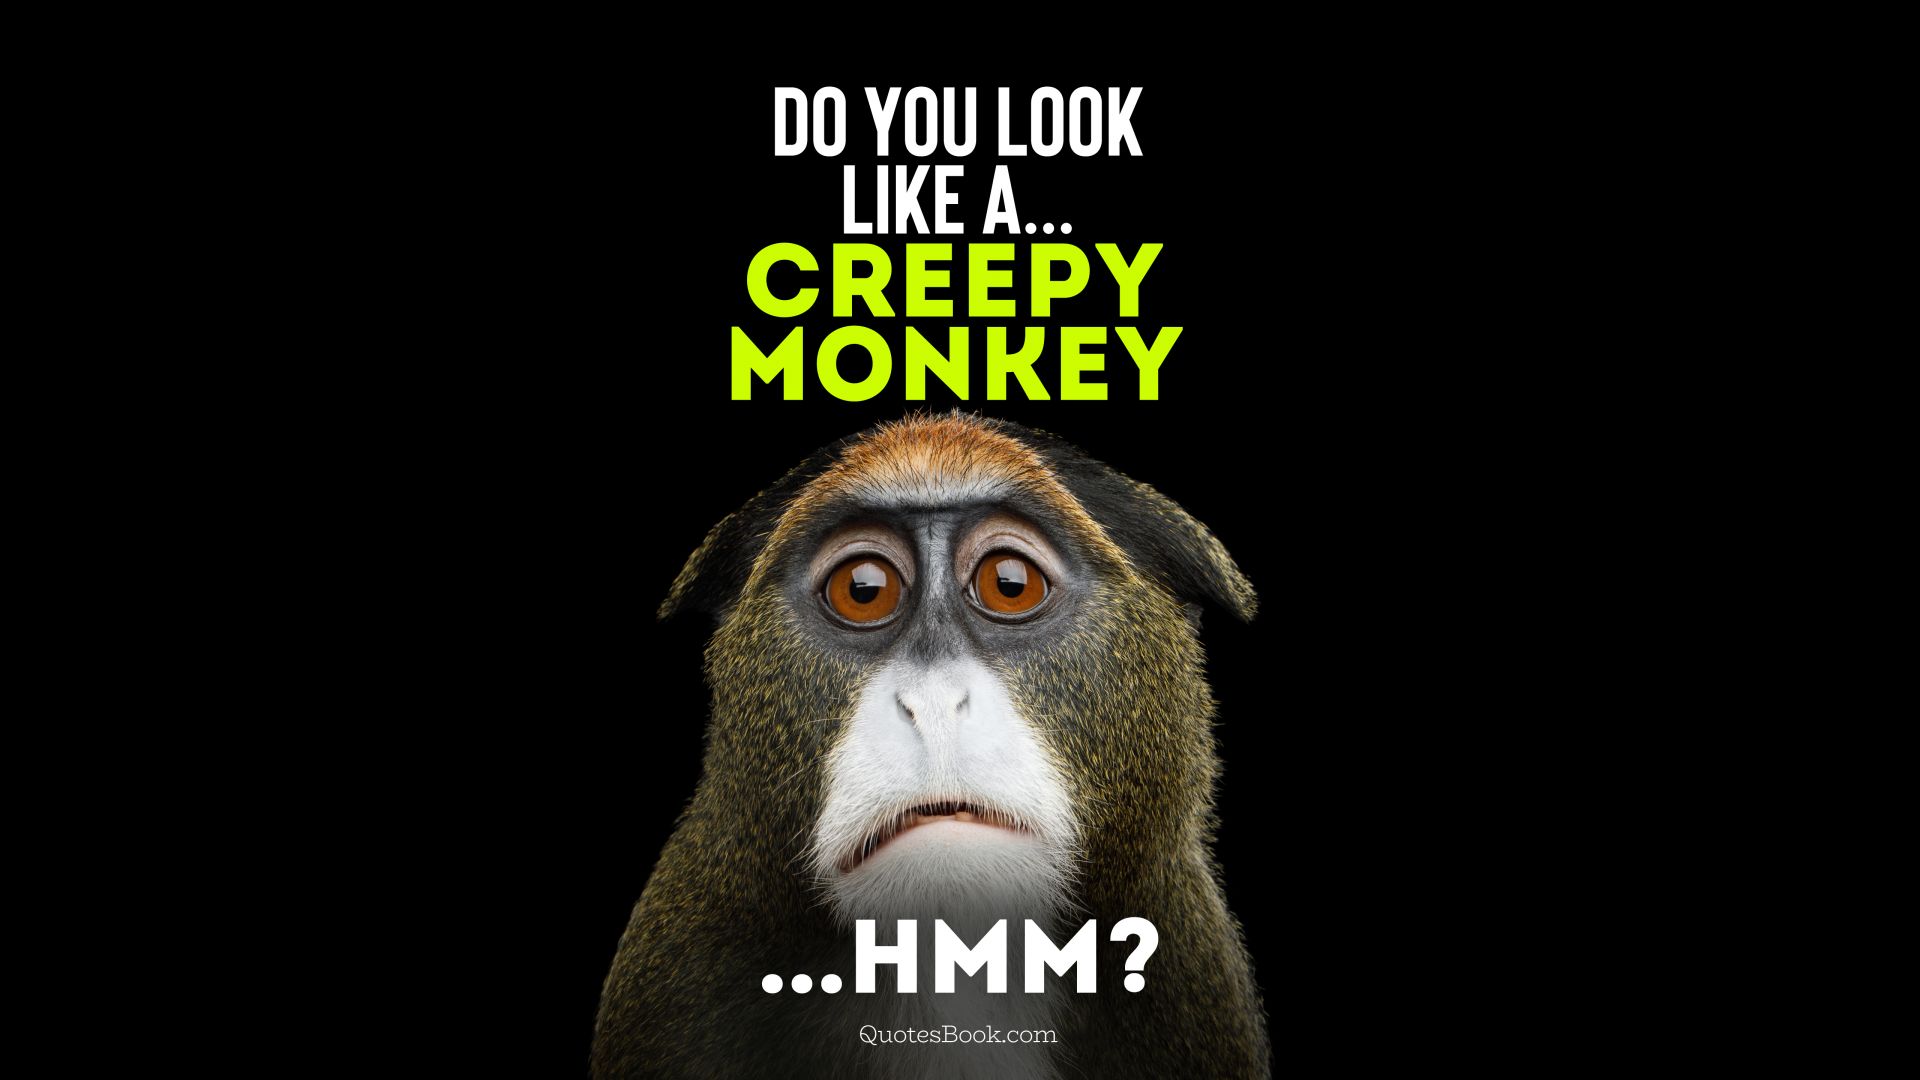 Do you  look like a... Creepy monkey...Hmm?